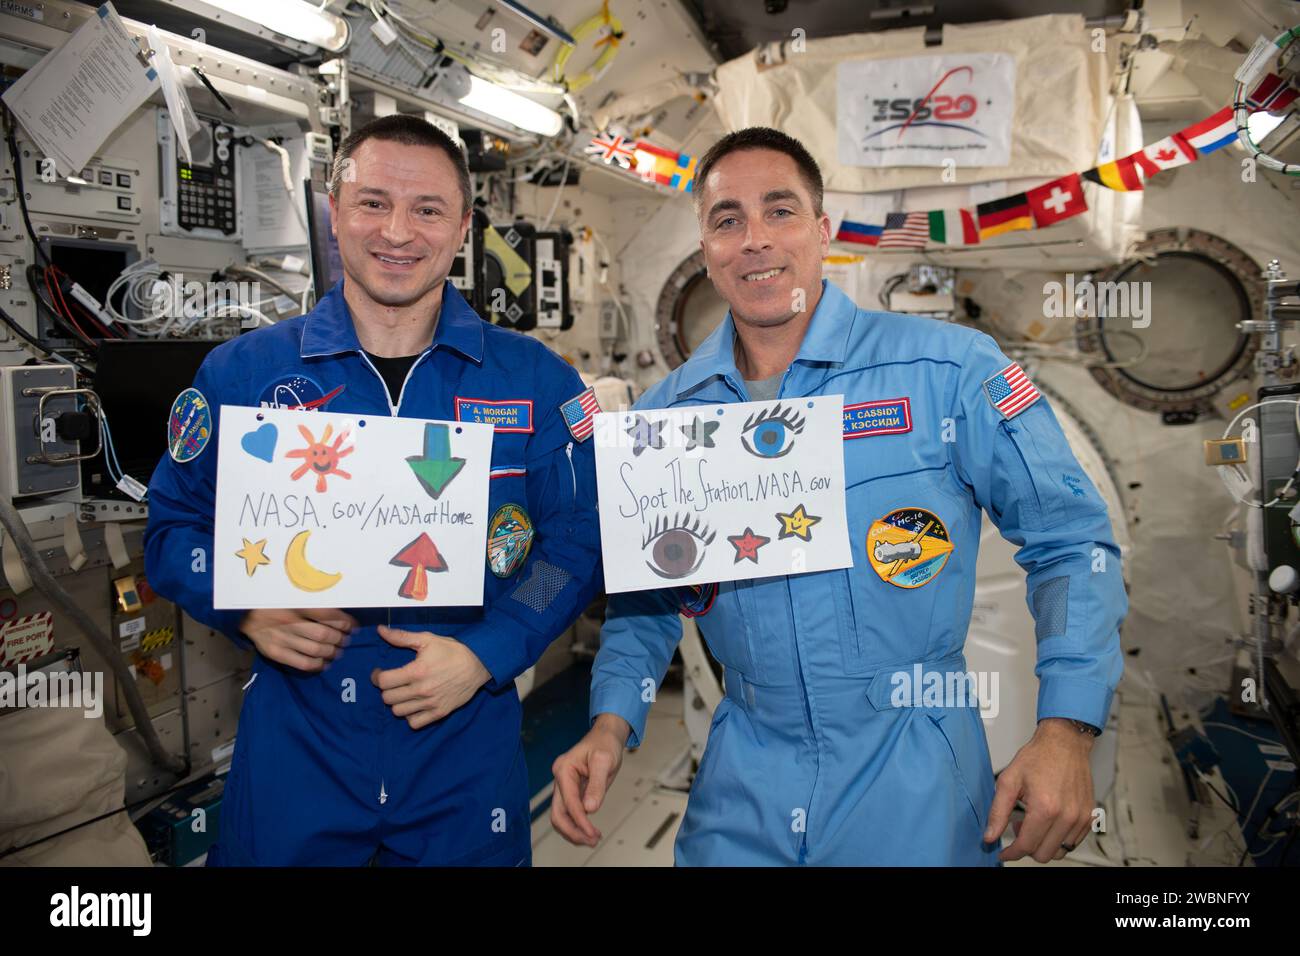 Iss062e147663 (12.04.2020) --- Ein Blick, der während der PAO-Veranstaltung im japanischen Experiment-Modul (JEM) an Bord der Internationalen Raumstation (ISS) aufgenommen wurde. Astronaut Drew Morgan nimmt in seinem blauen Fluganzug an der Veranstaltung Teil. Er hält ein Schild mit der Aufschrift NASA.gov/NASAatHome. Er wird von Astronaut Christopher Cassidy begleitet, der ein Schild mit der Aufschrift Spot the station.NASA.gov hält. Stockfoto